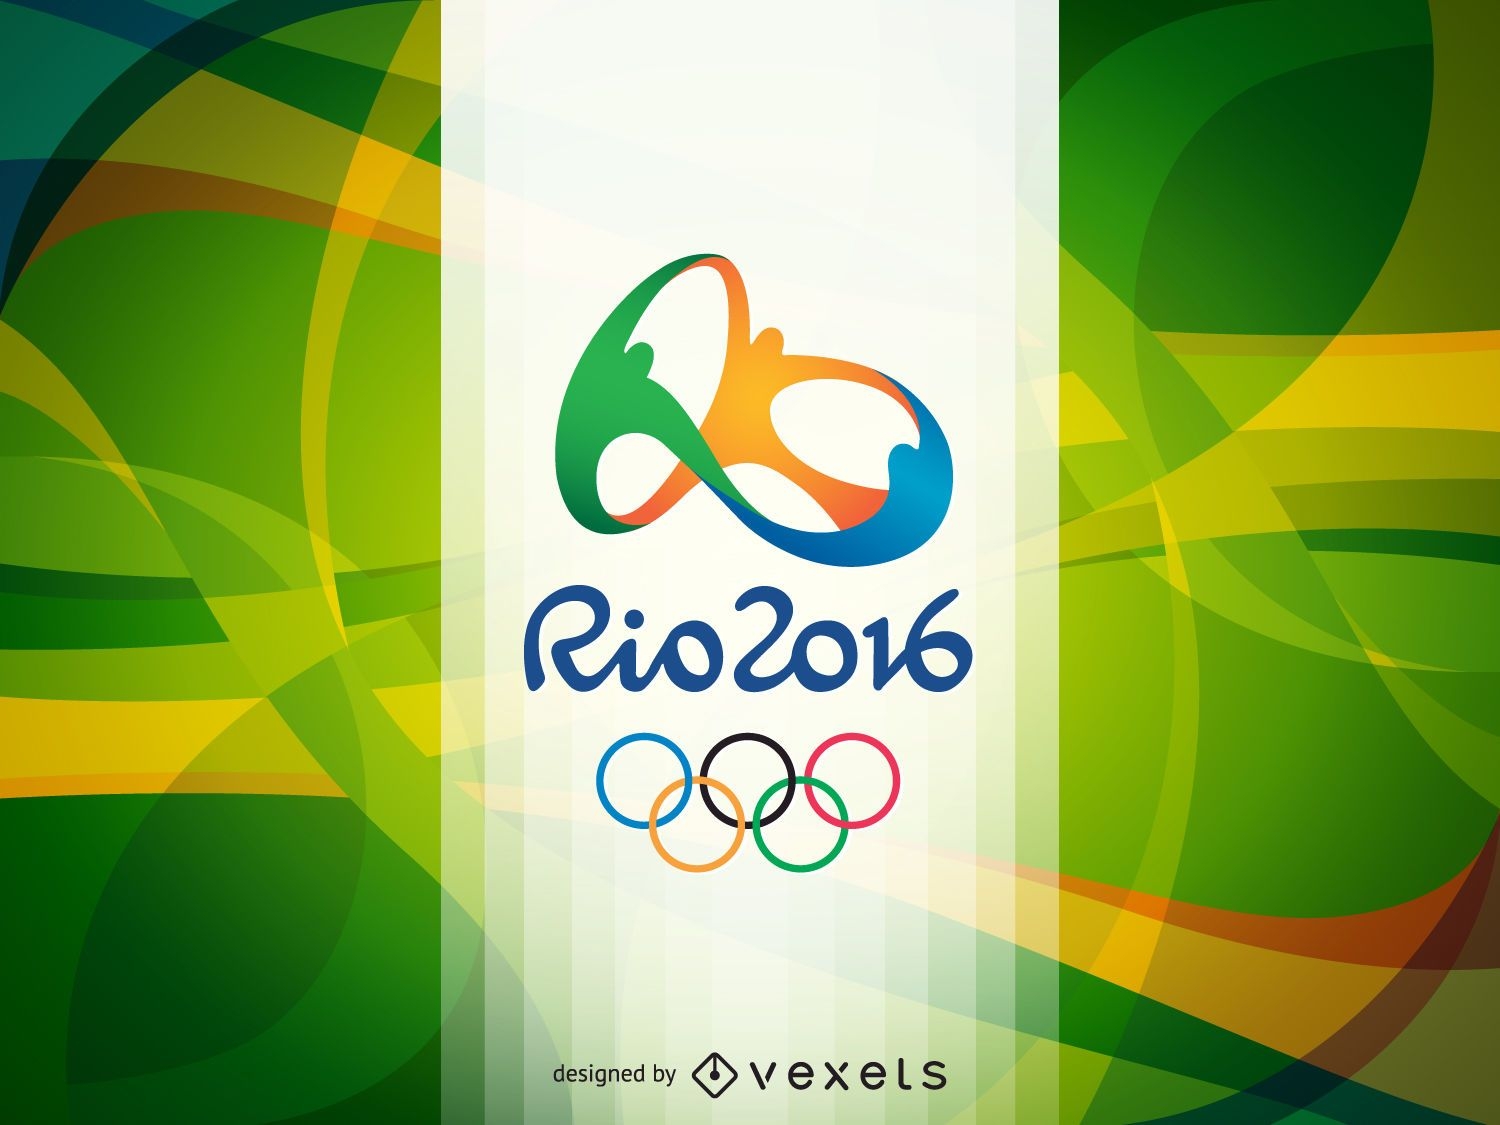 Juegos Ol?mpicos Rio 2016